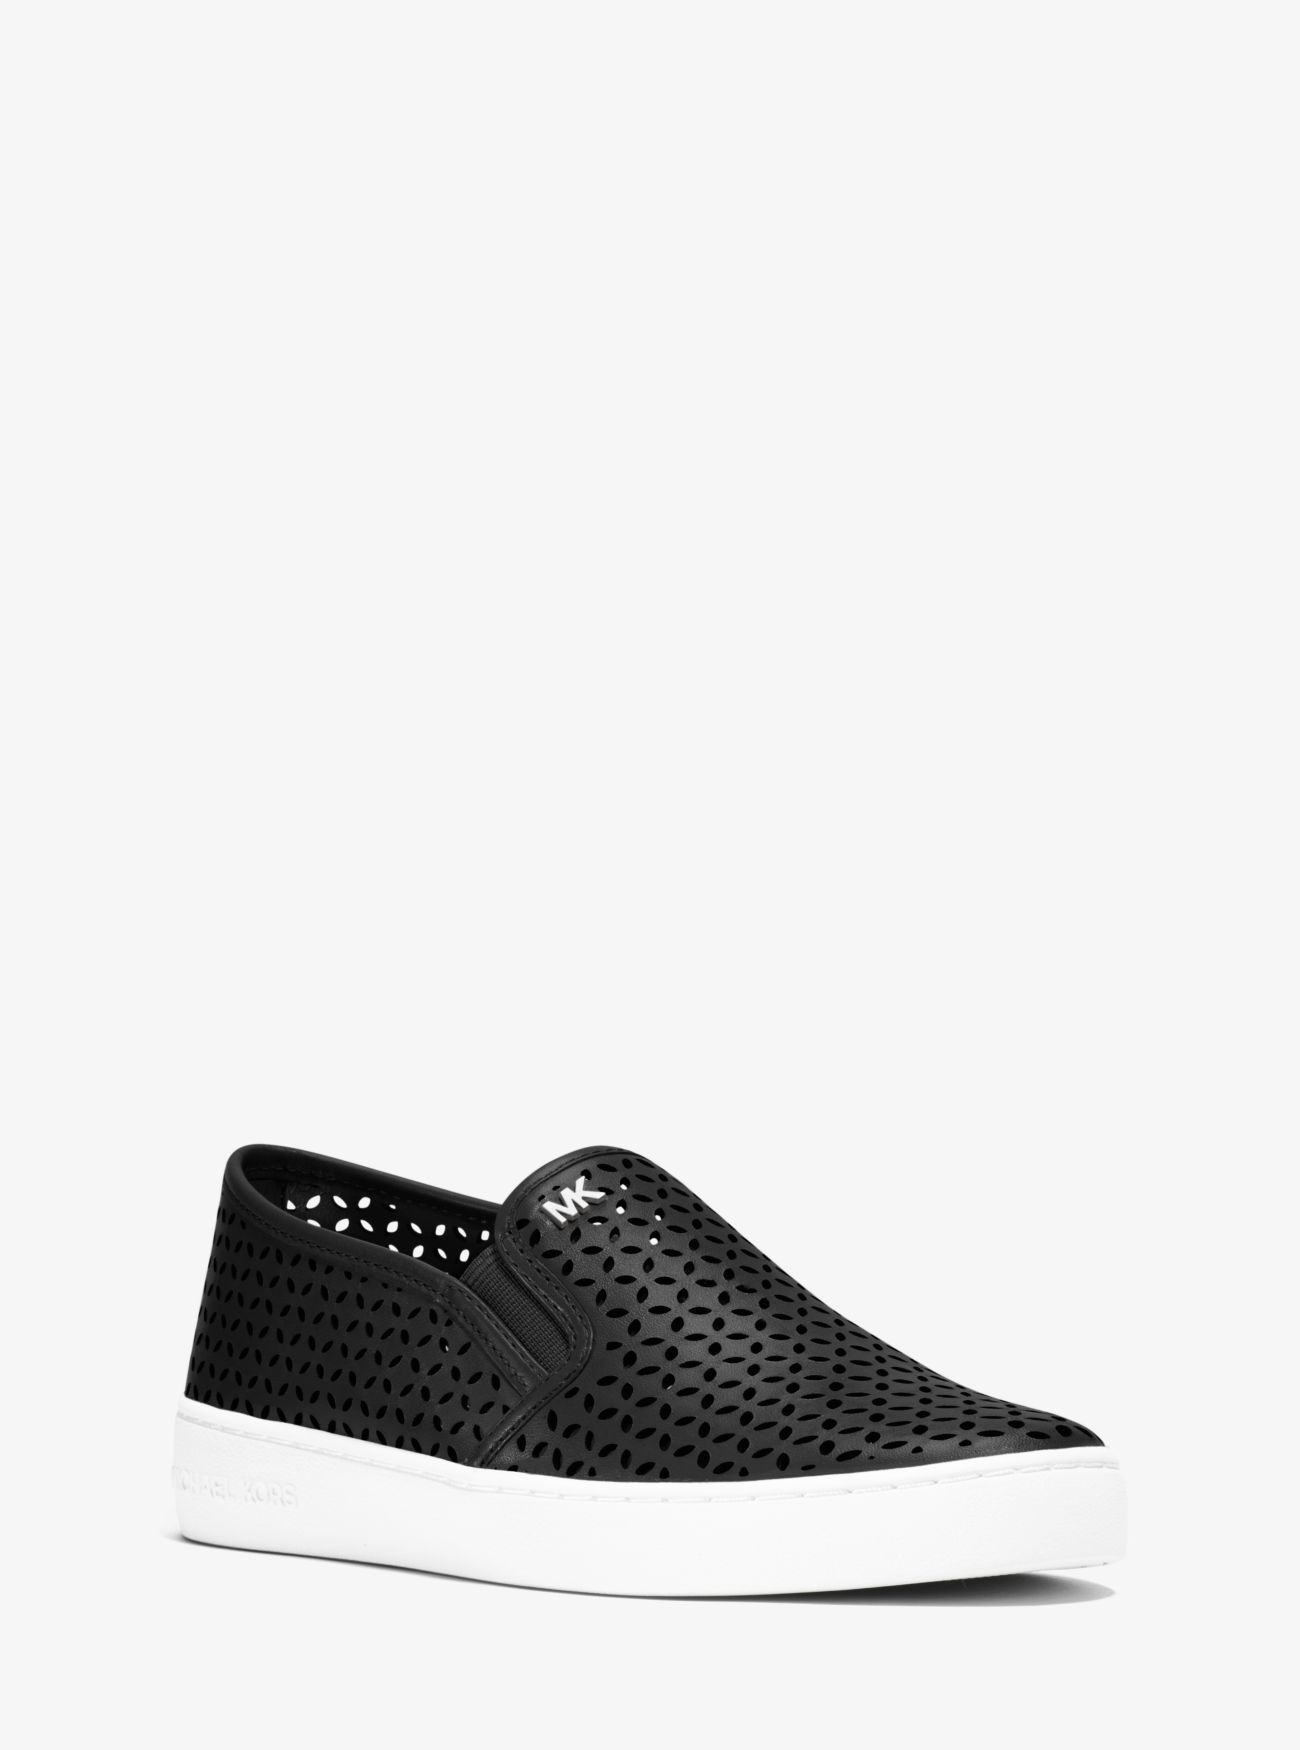 Olivia Perforated Leather Slip-On Sneaker | Michael Kors US